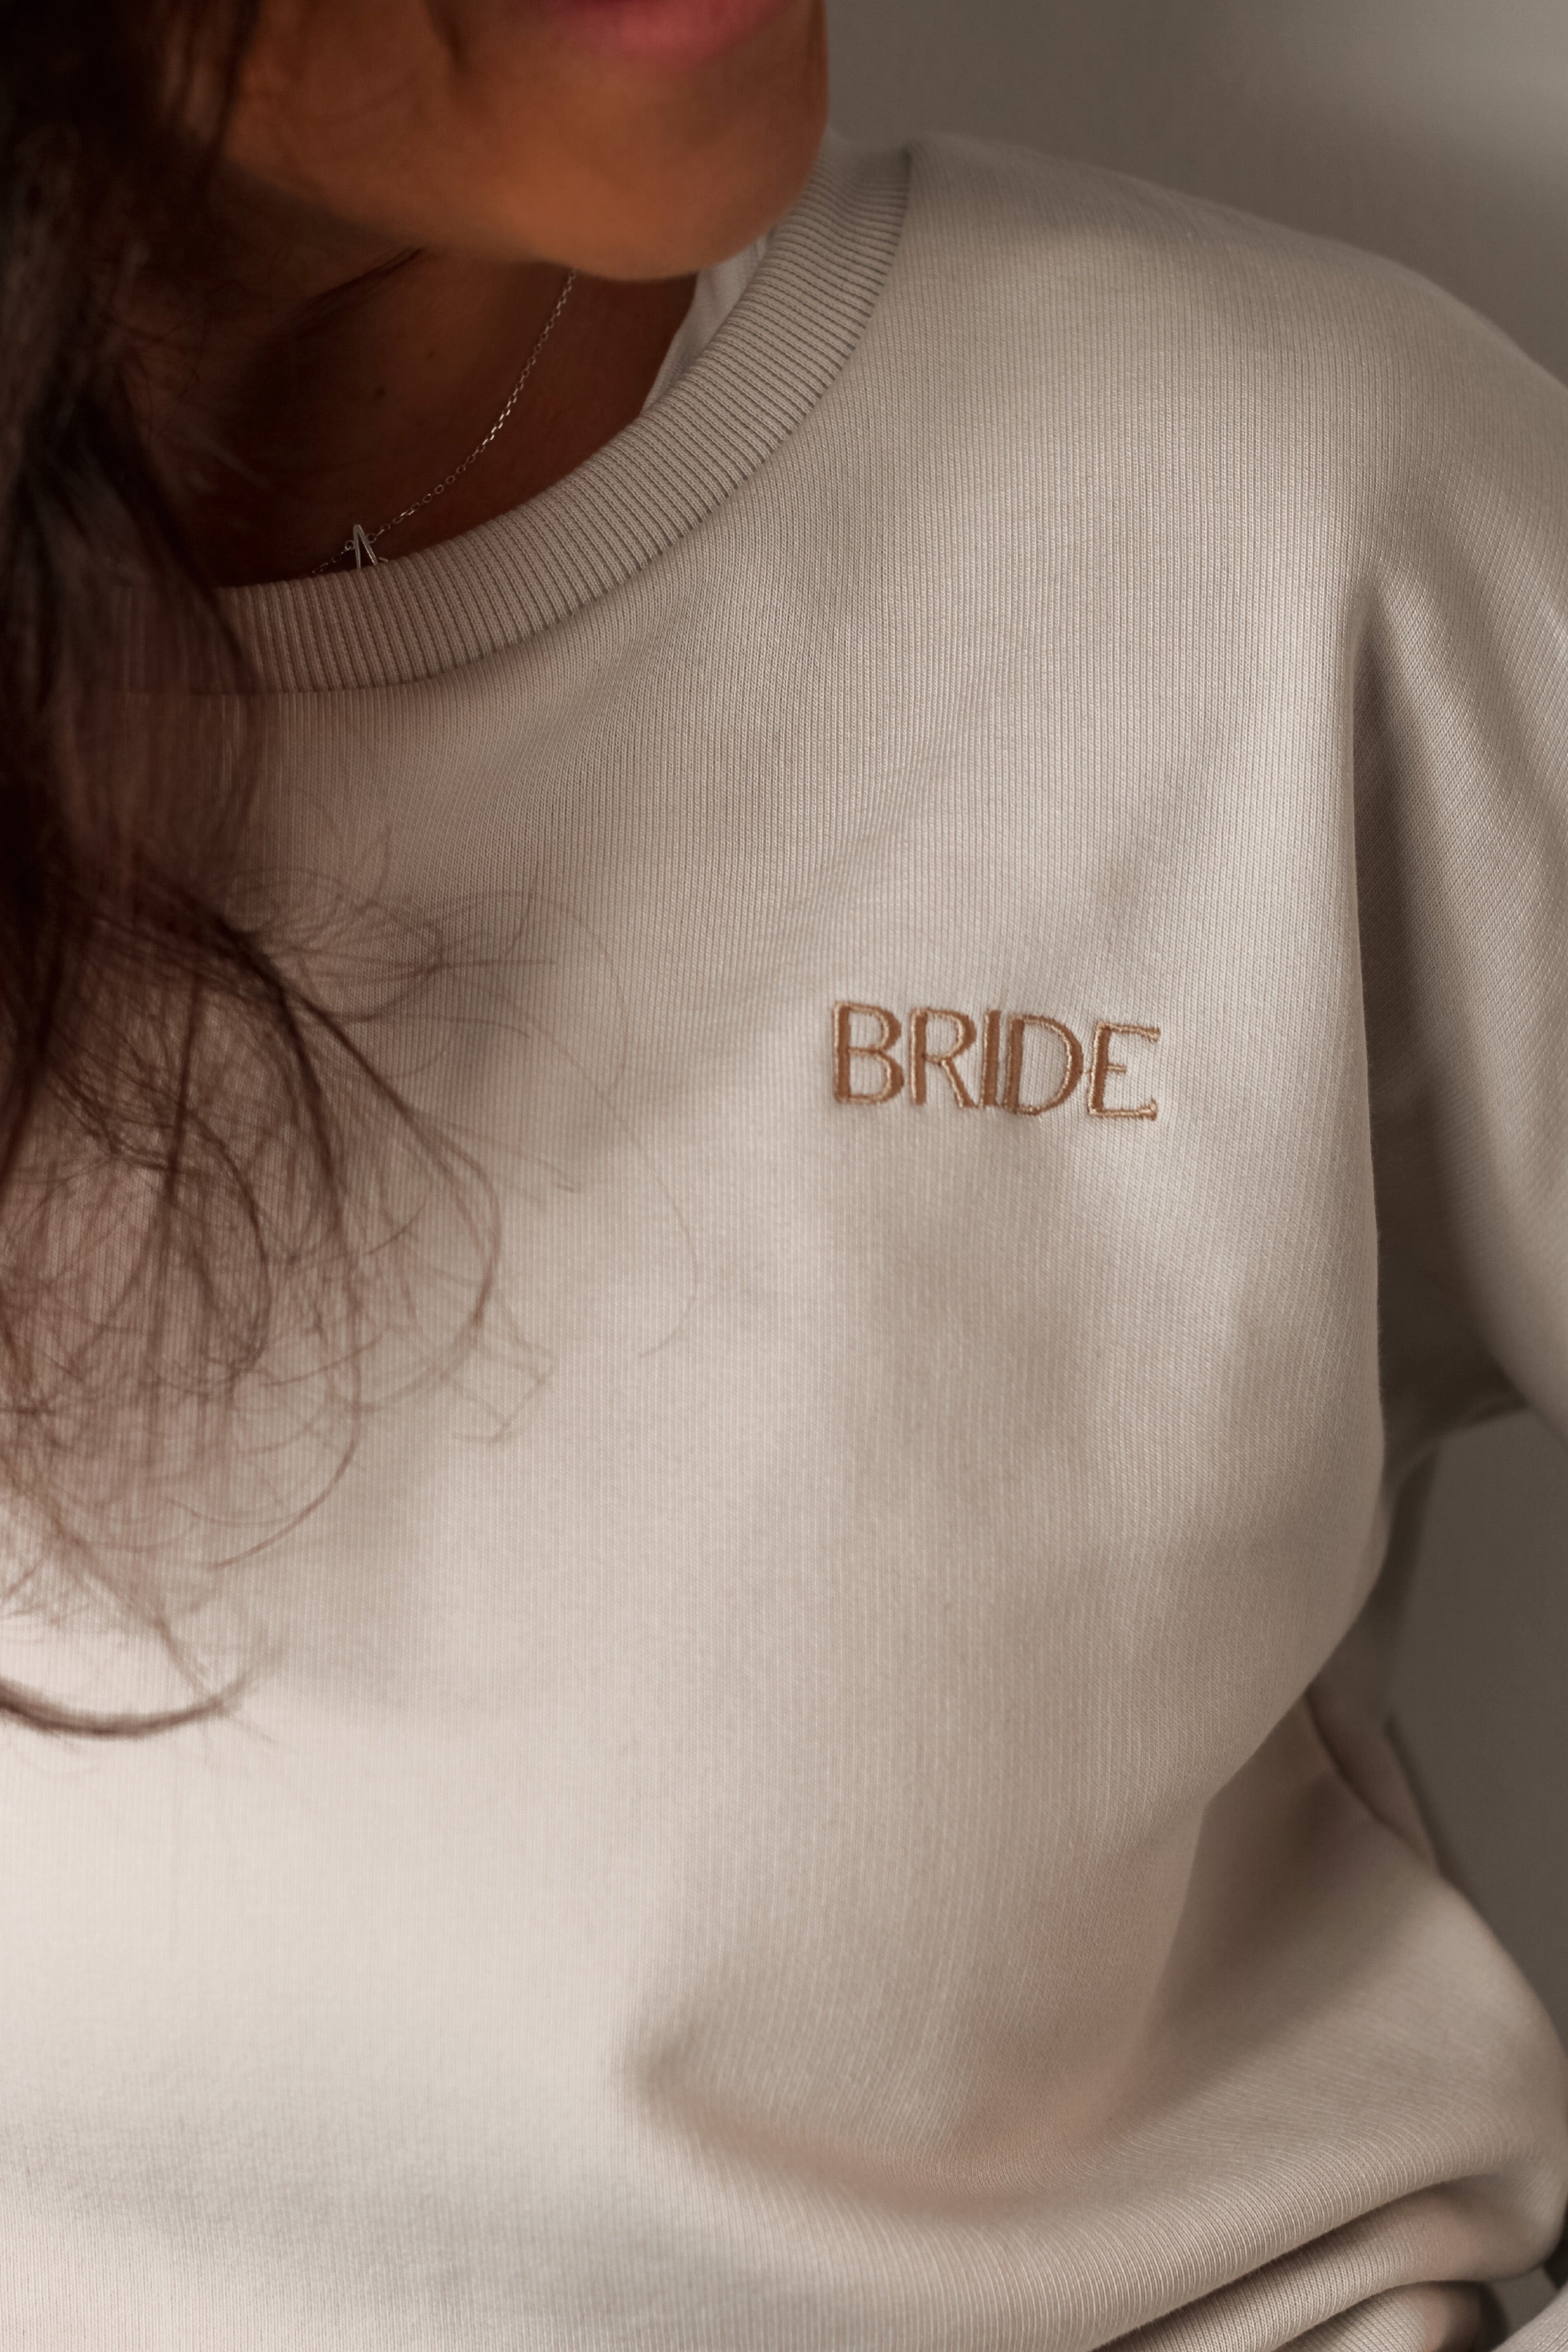 BRIDE embroidered Jumper